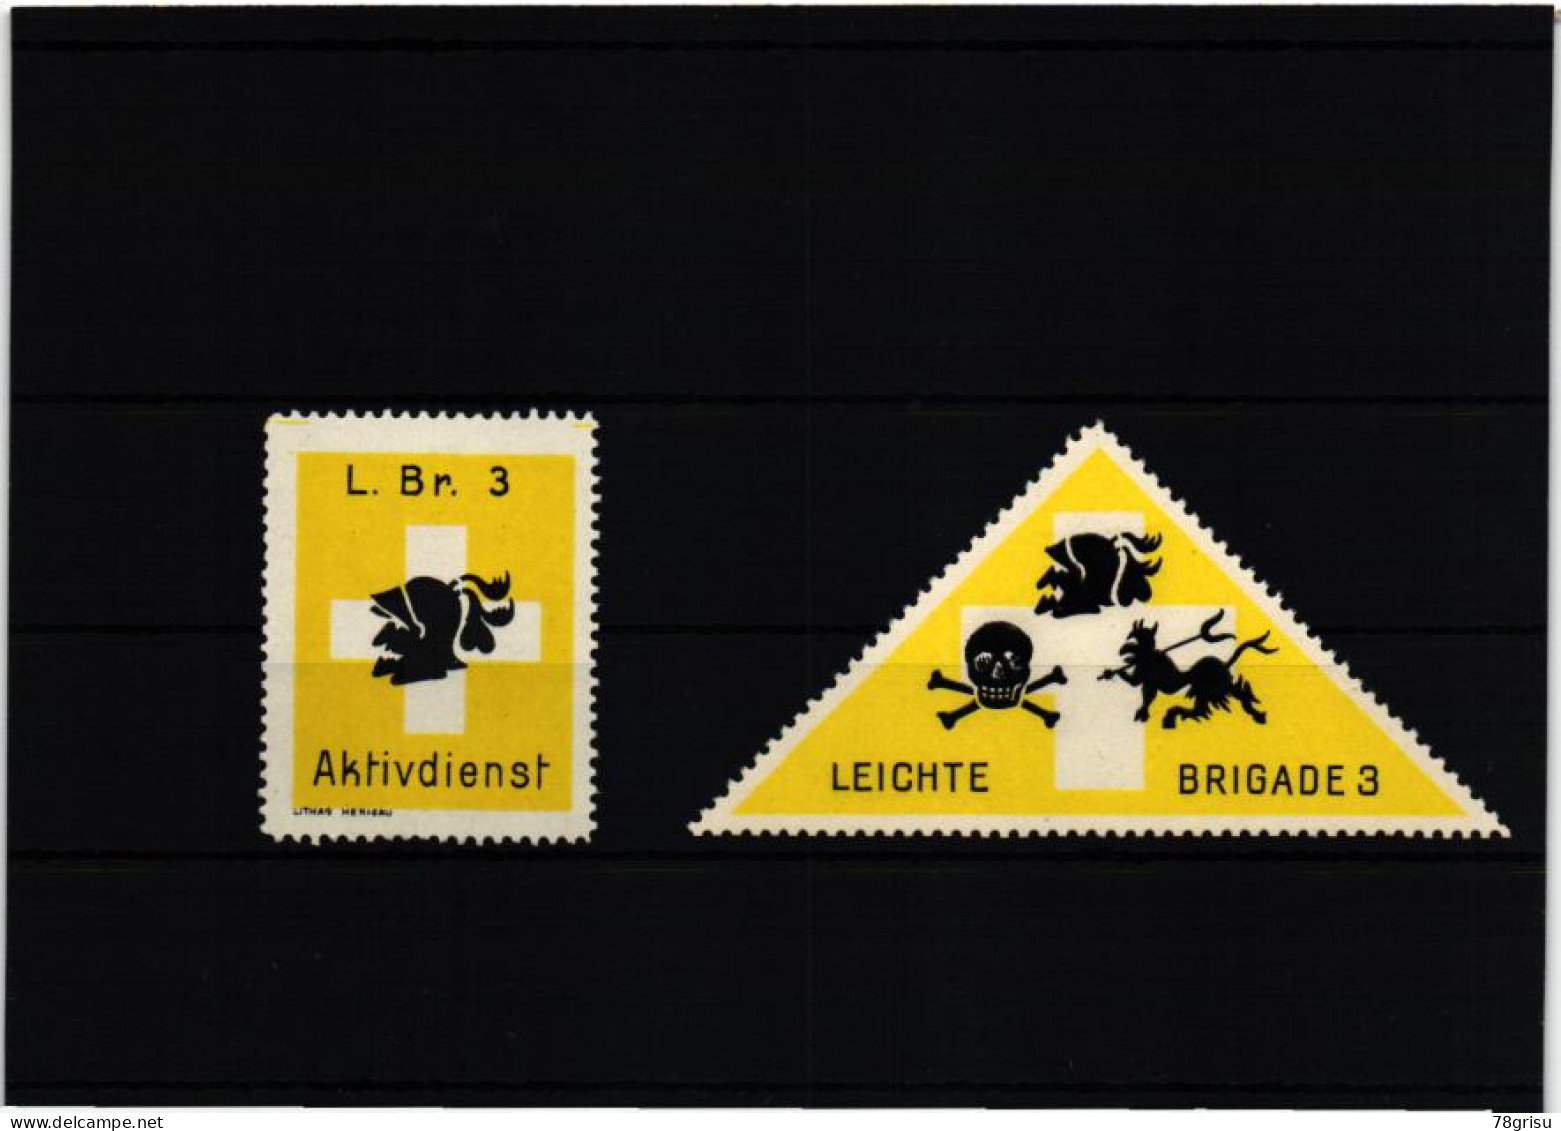 Schweiz Soldatenmarken, LEICHTE BRIGADE 3 L.BR. AKTIVDIENST 1939 1940 - Labels